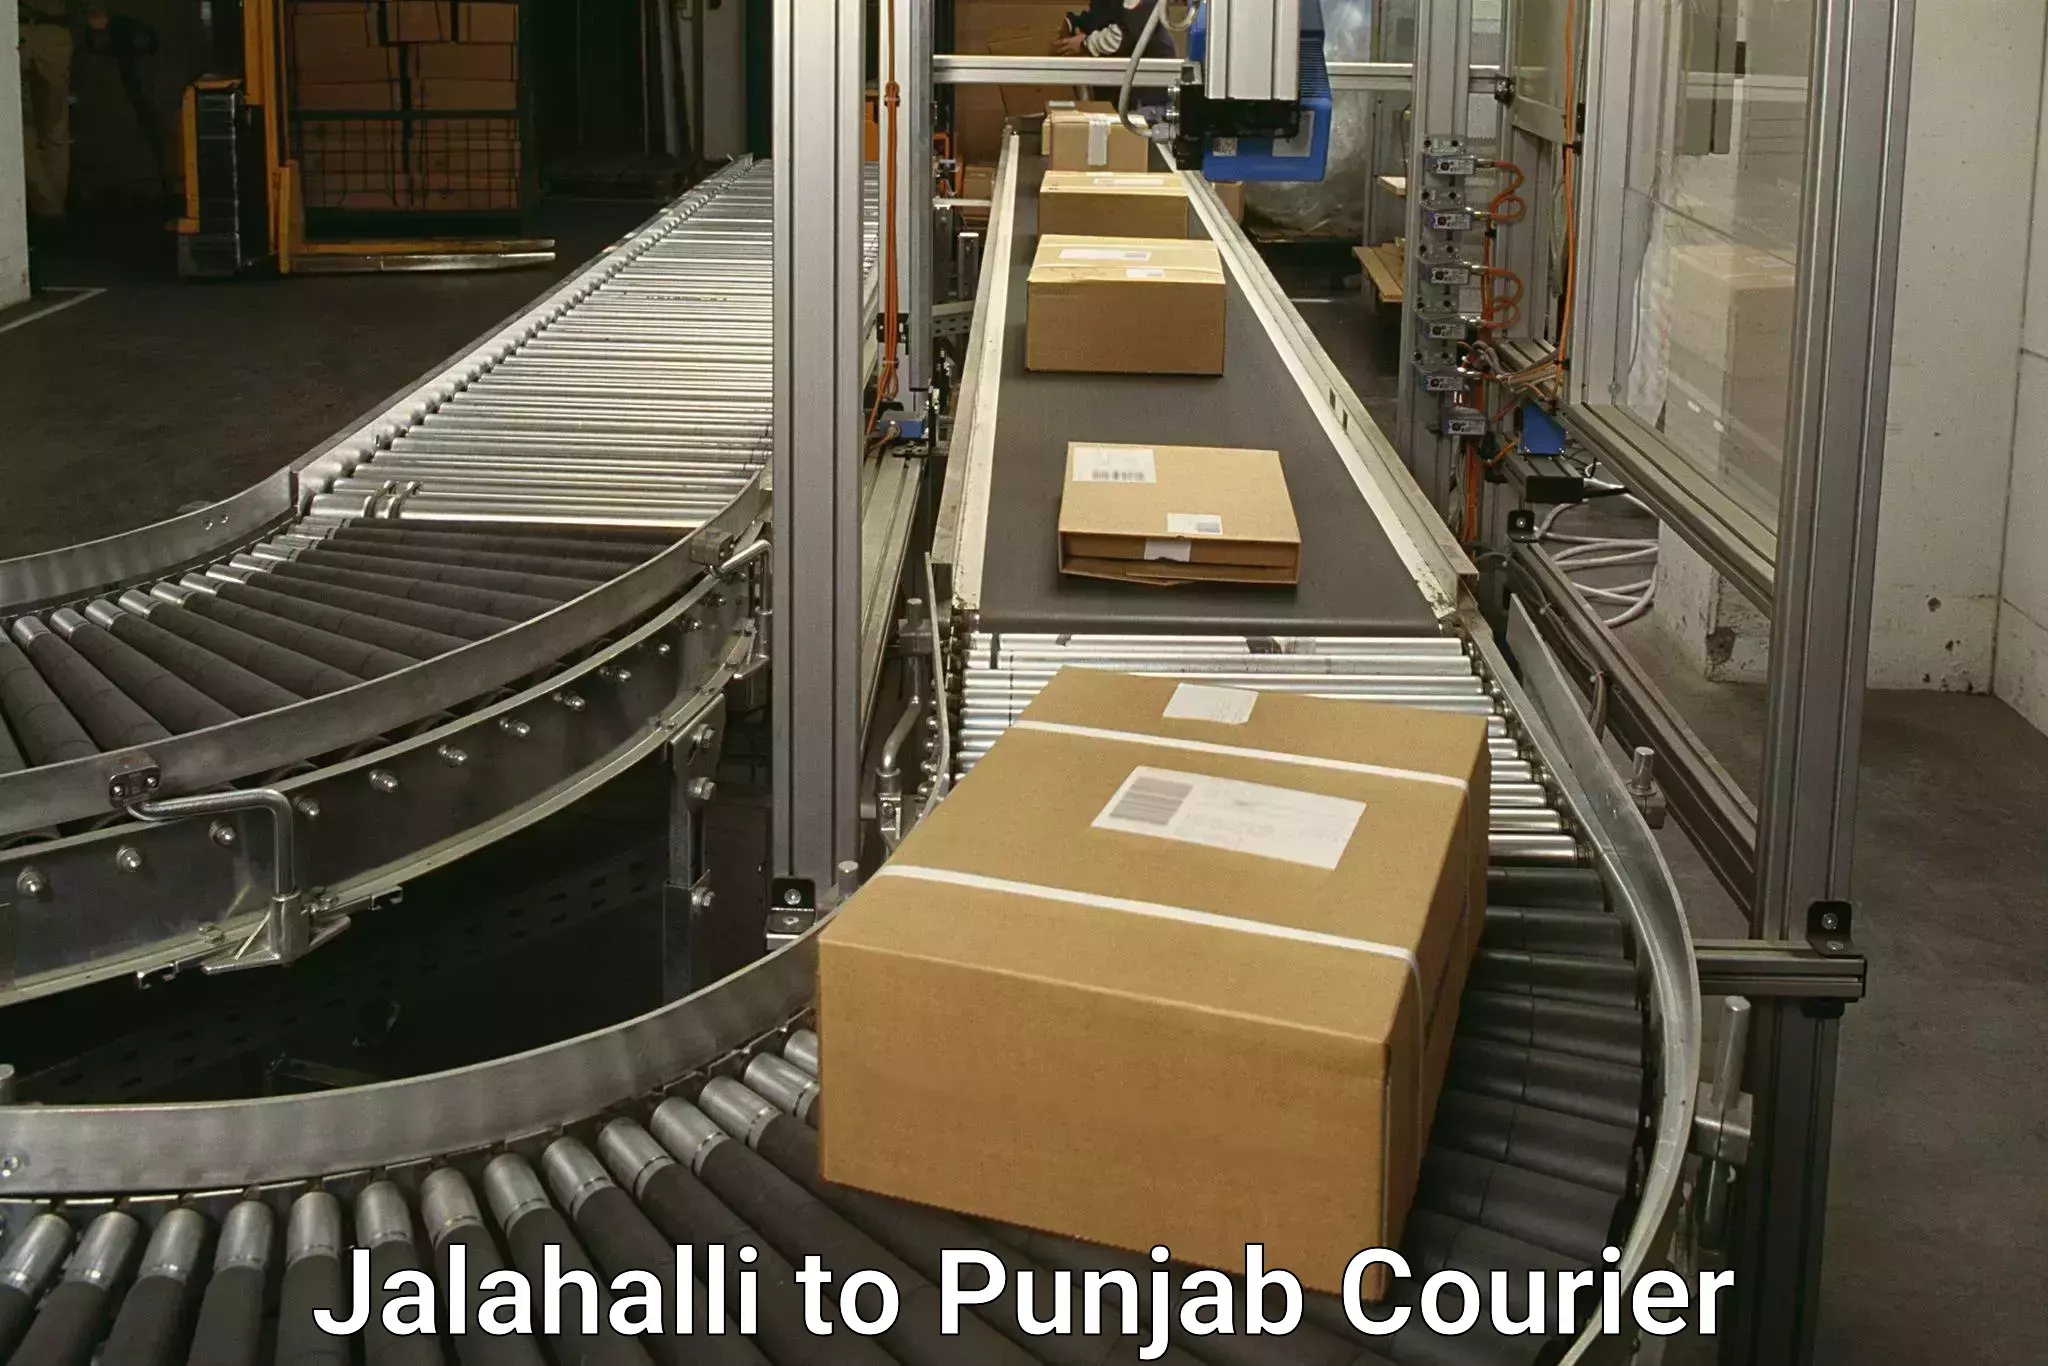 Cross-border shipping Jalahalli to Tarn Taran Sahib